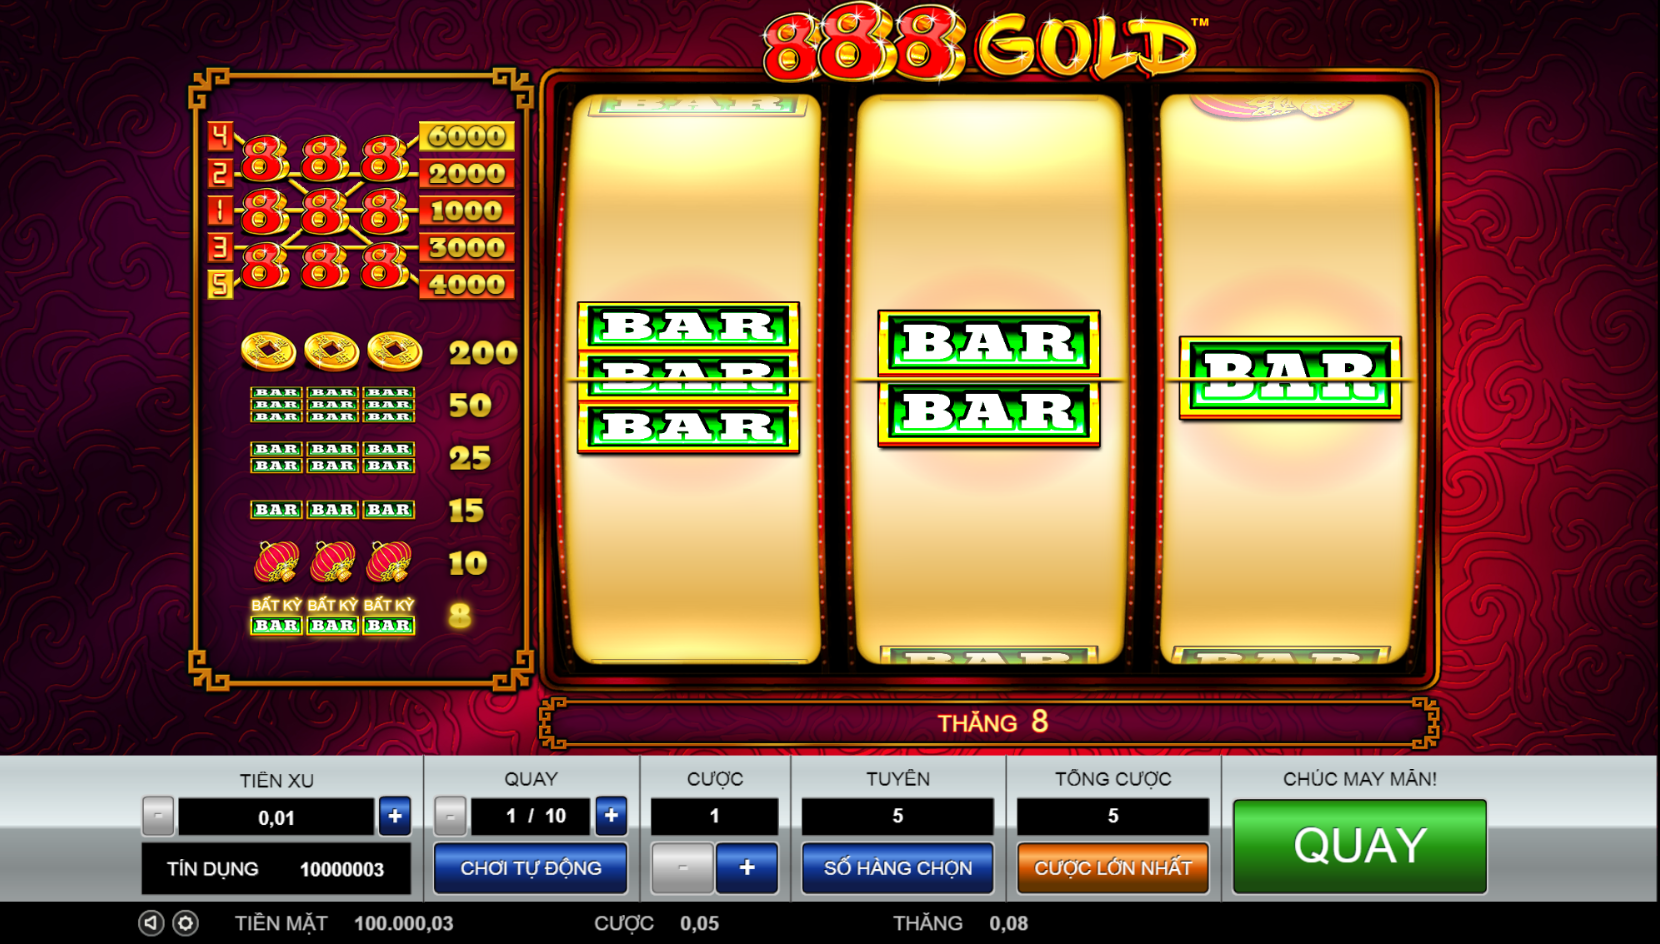 Chơi quay thử tại 888 Gold các trò chơi Slots của M88